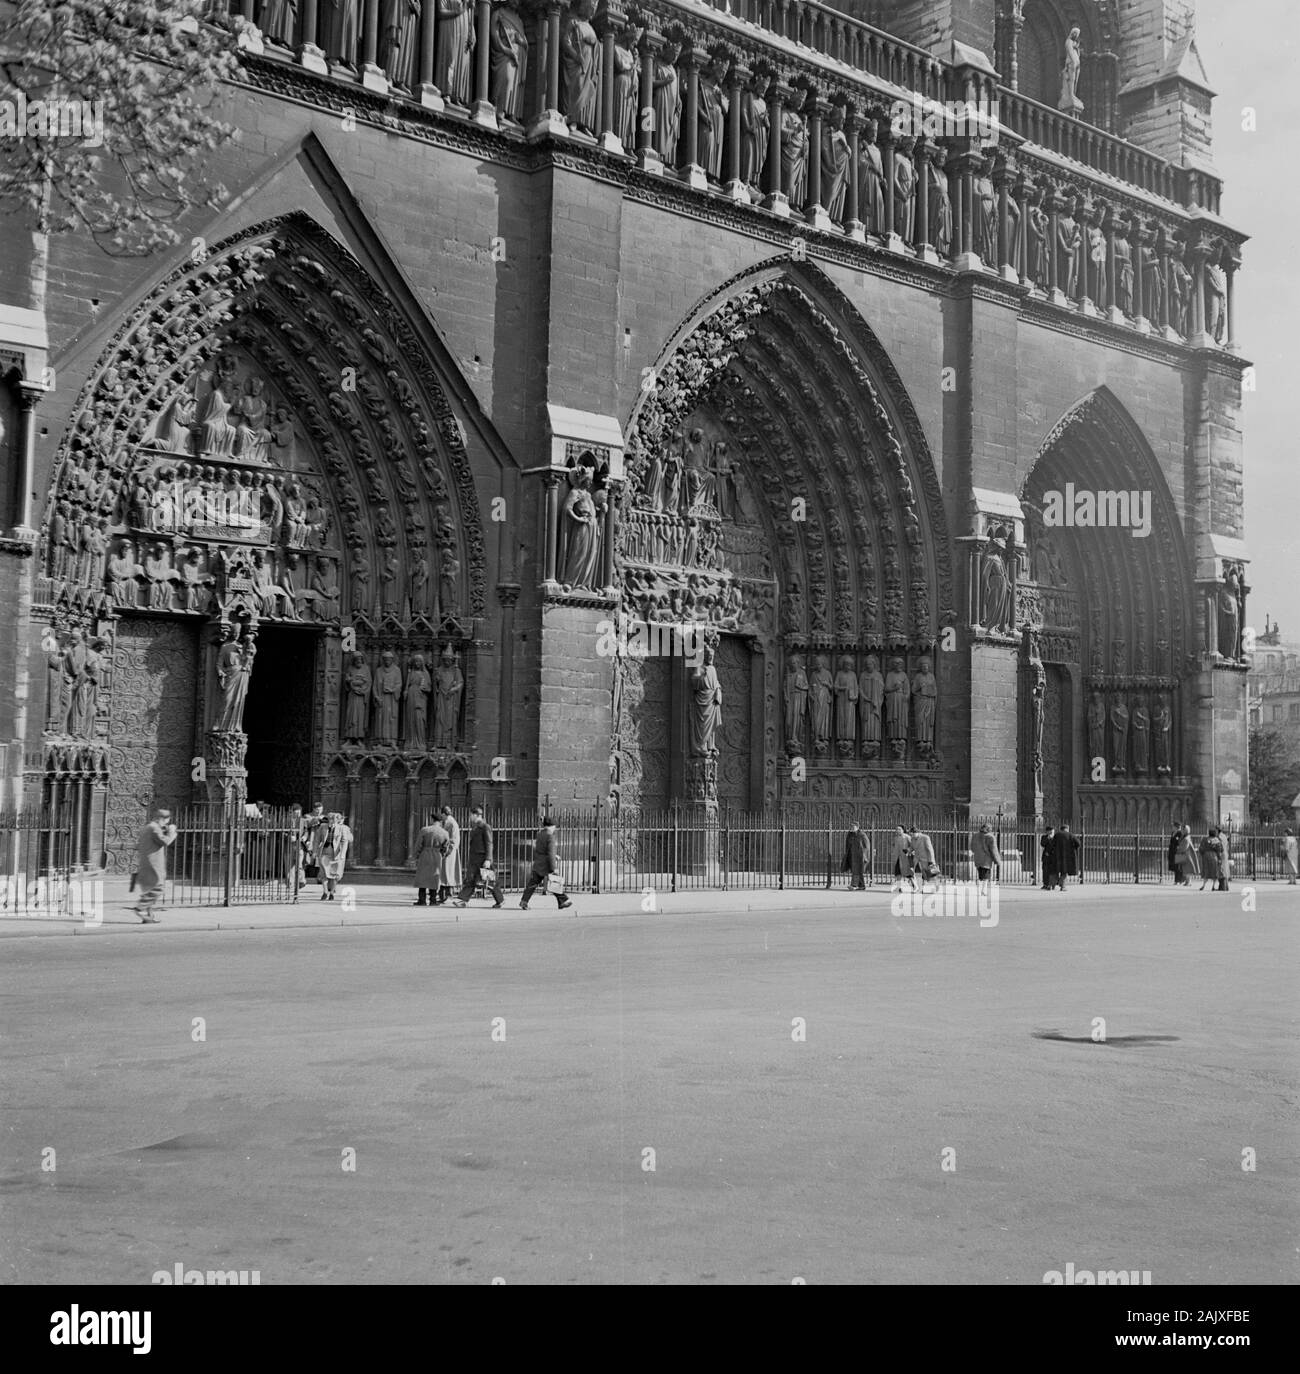 Années 1950, historique, une vue de l'ère de la grande entrée de la célèbre monument, la cité médiévale de la Cathédrale Notre-Dame, Paris, France, considéré comme l'un des plus beaux exemples de l'architecture gothique française. Banque D'Images